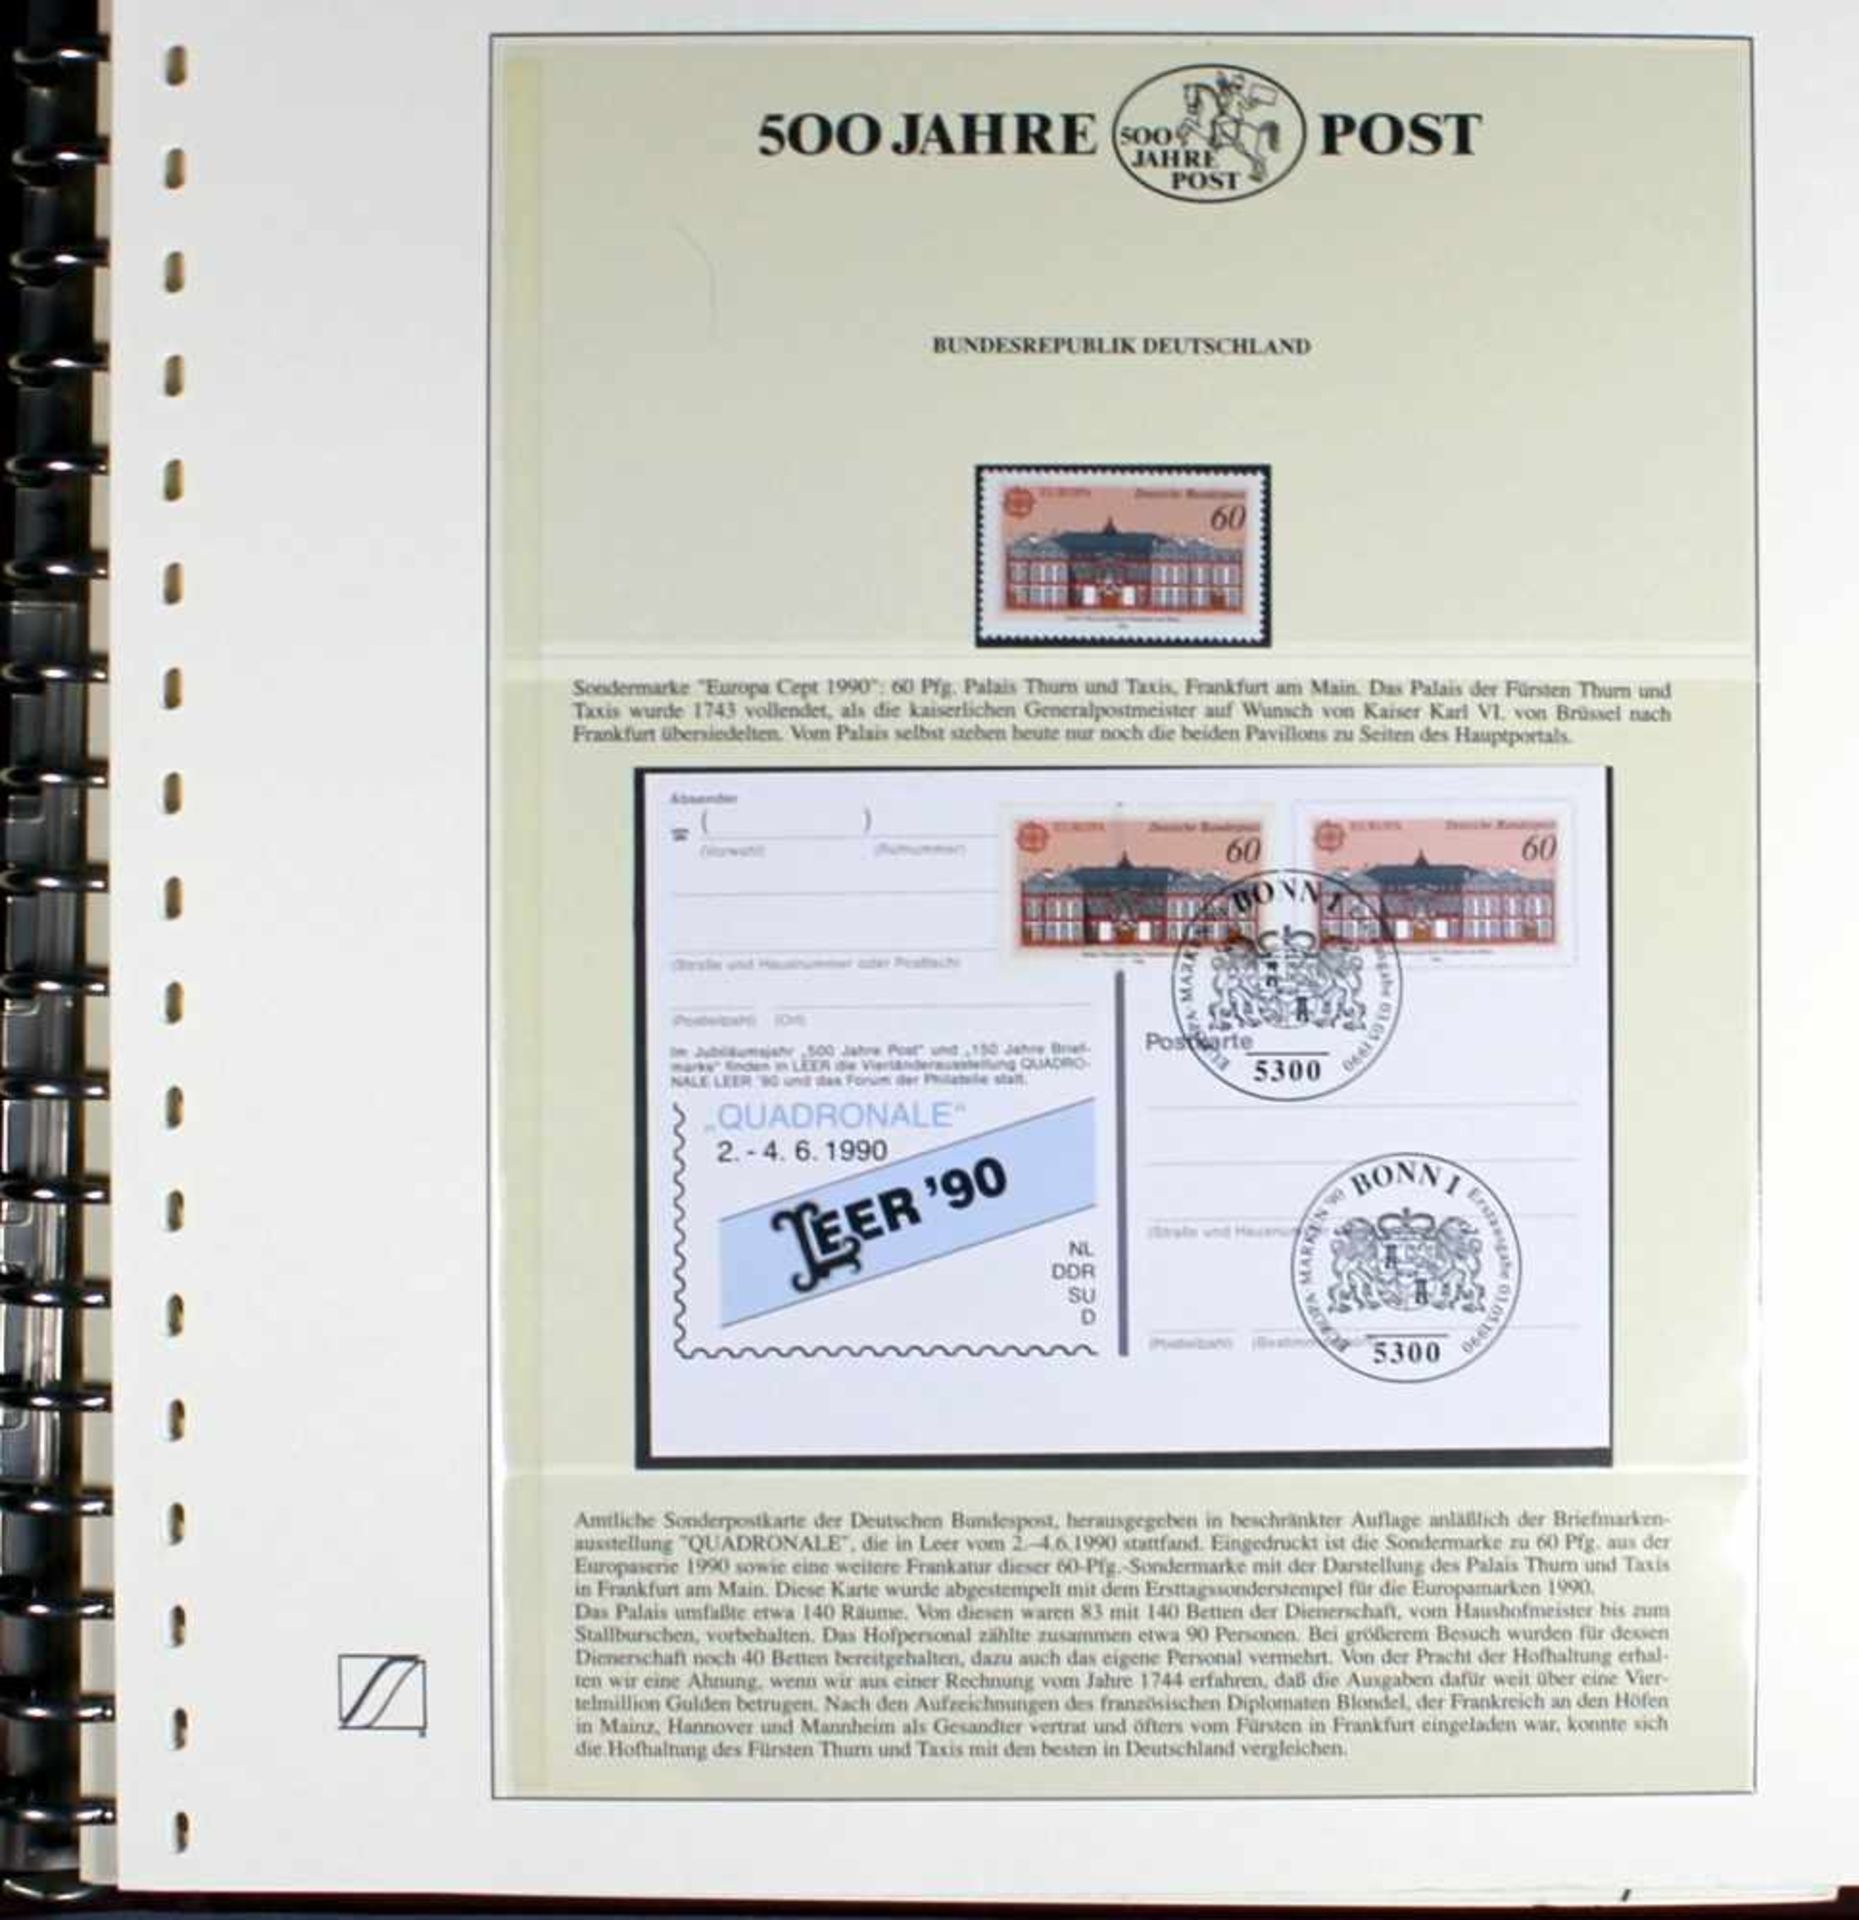 1 Sammlung "500 Jahre Post" aus Sieger-Abo, hoher Einstandspreis - Bild 2 aus 2